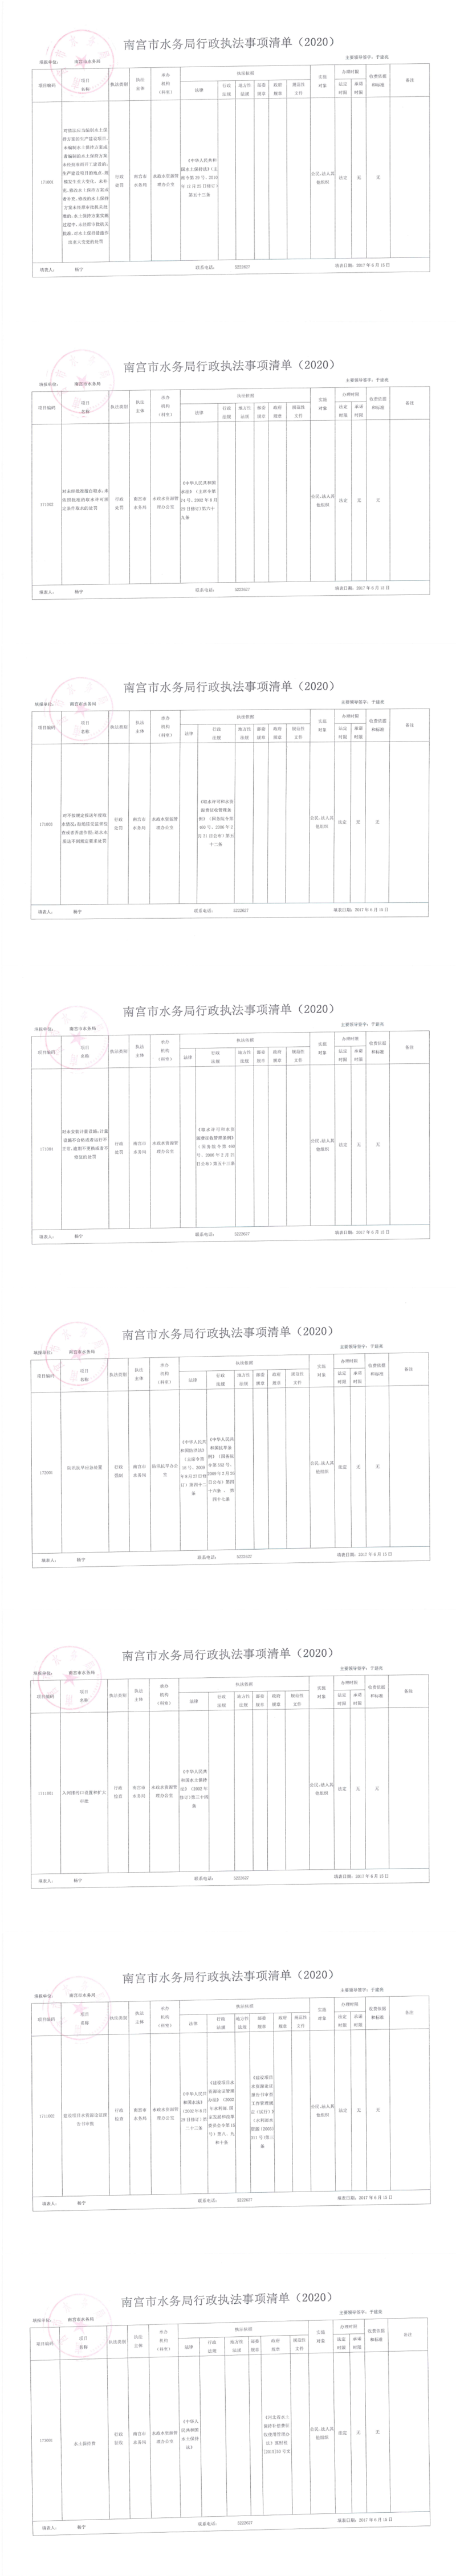 南宫市水务局行政执法事项清单（2020）.png